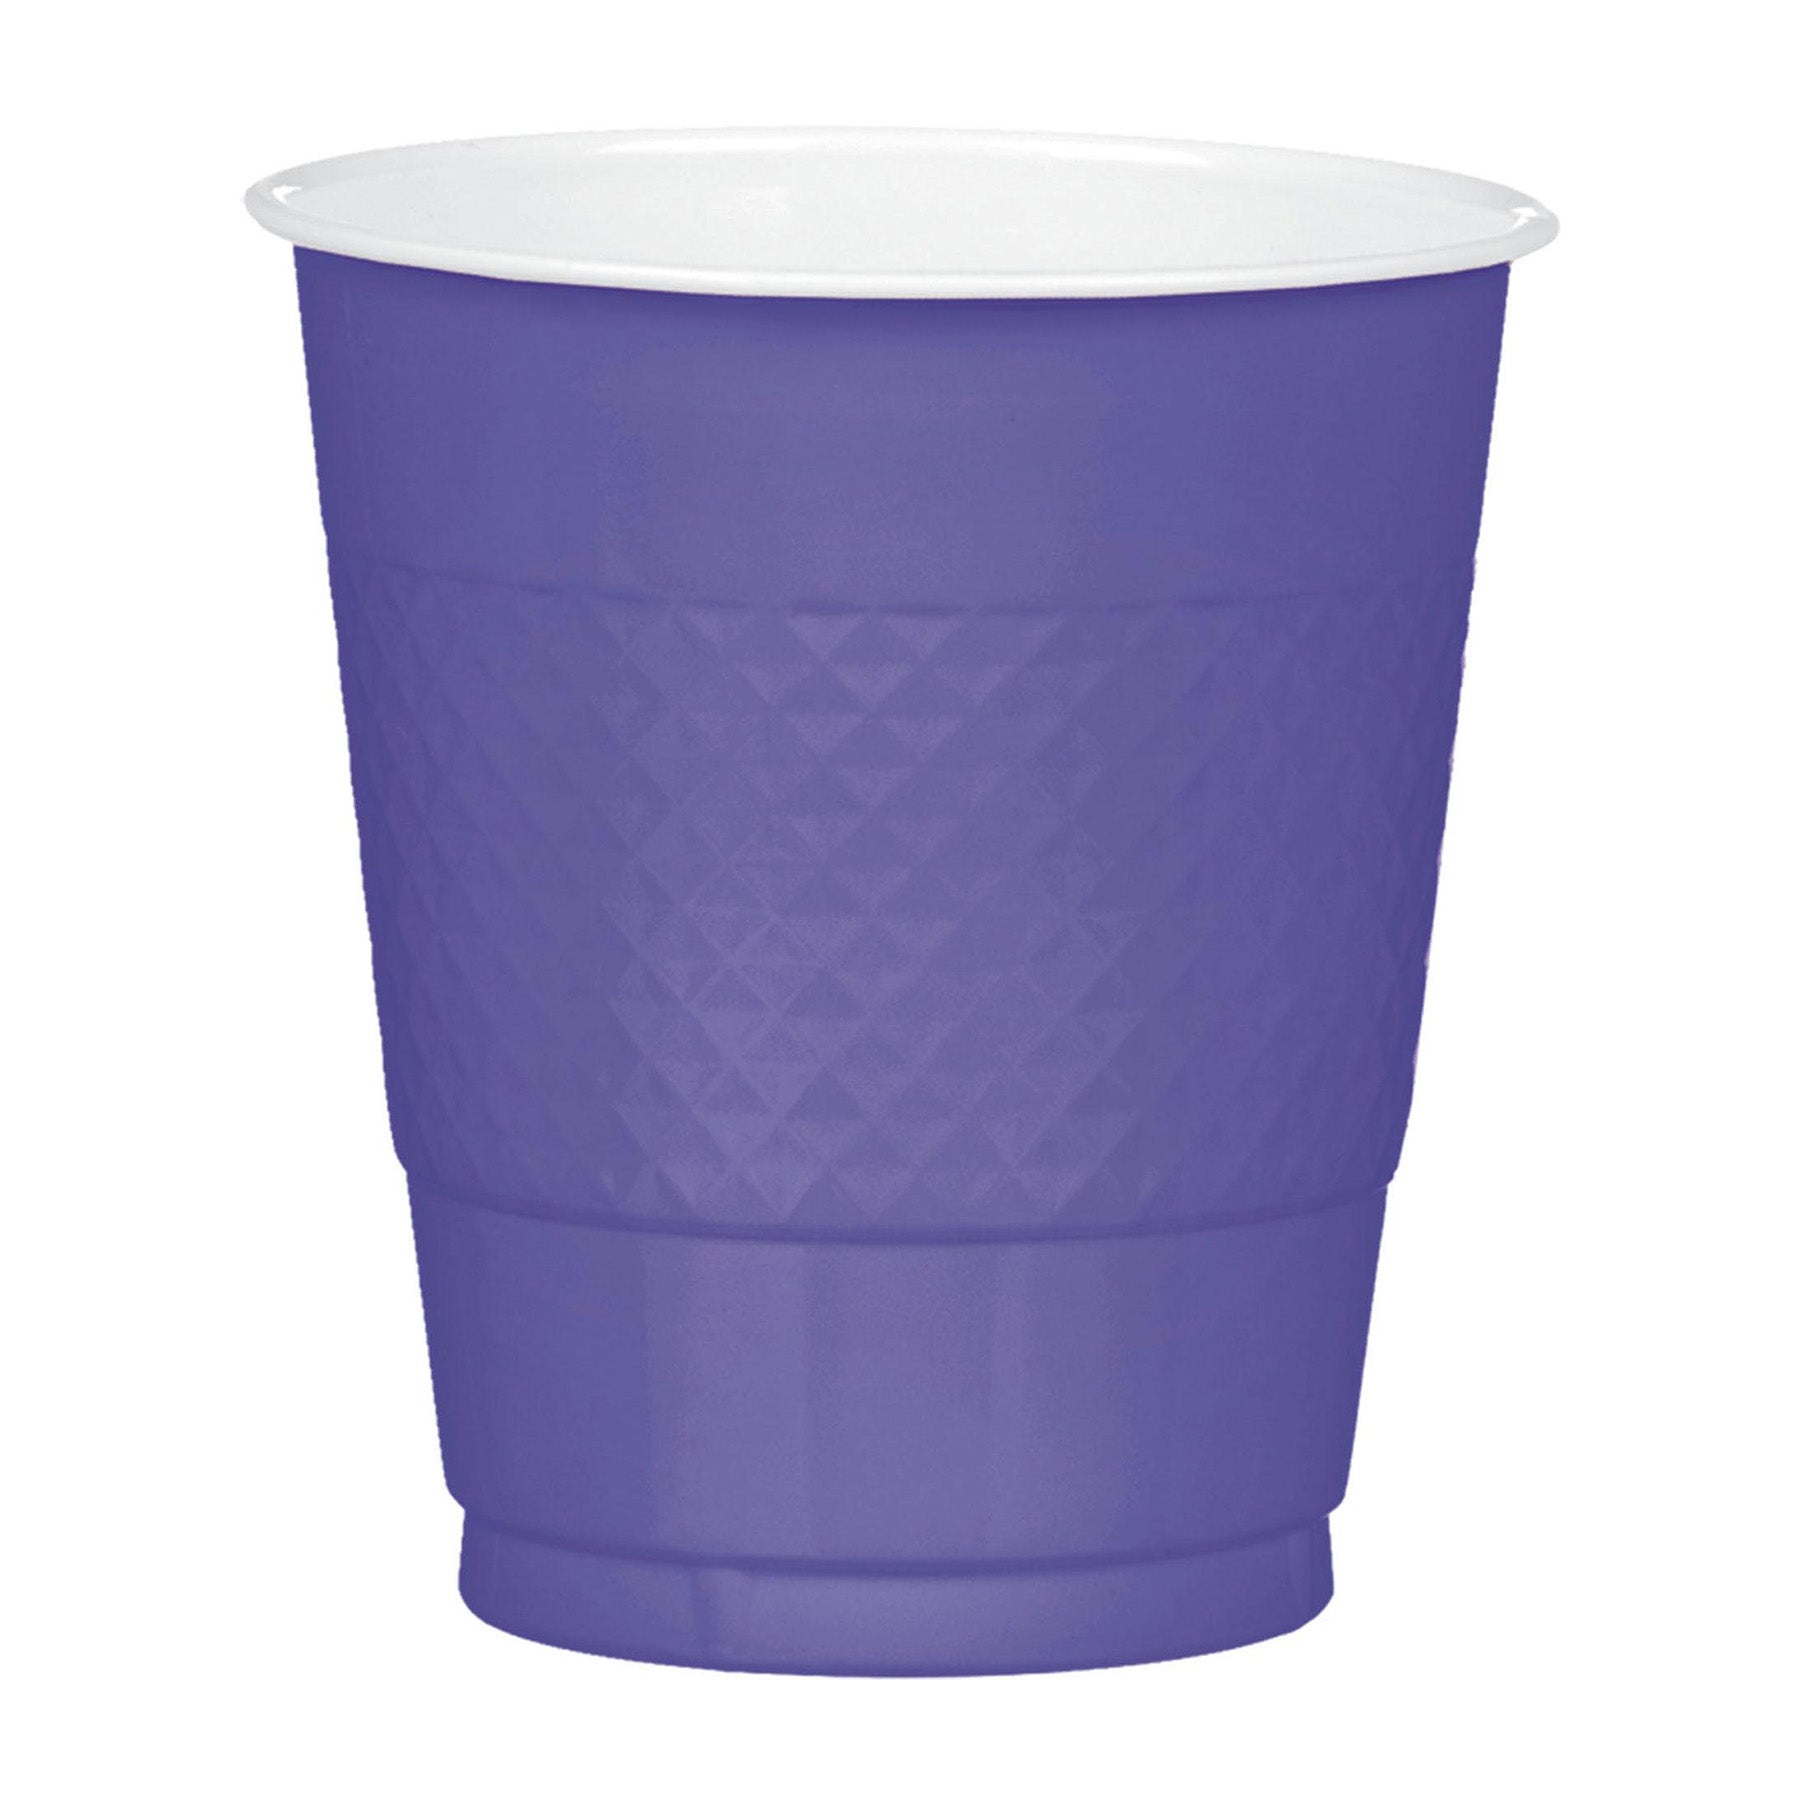 20 Pieces Plastic Cup Set , Royal blue color